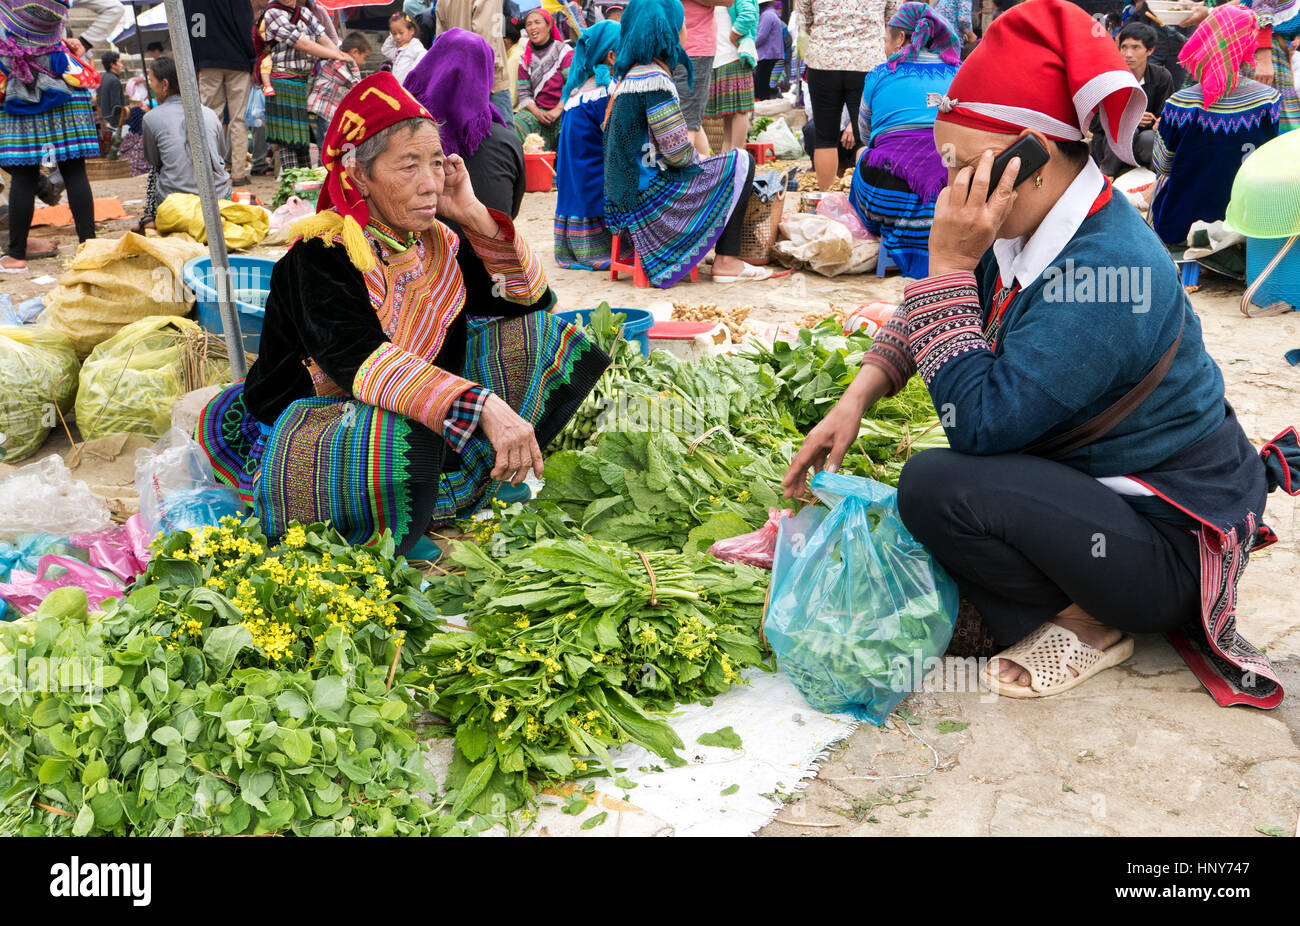 Femme Hmong de vendre ses légumes verts cultivés, mefarmers marché, client en utilisant son téléphone cellulaire, costumes indigènes, Bac Ha Marché de fermiers. Banque D'Images